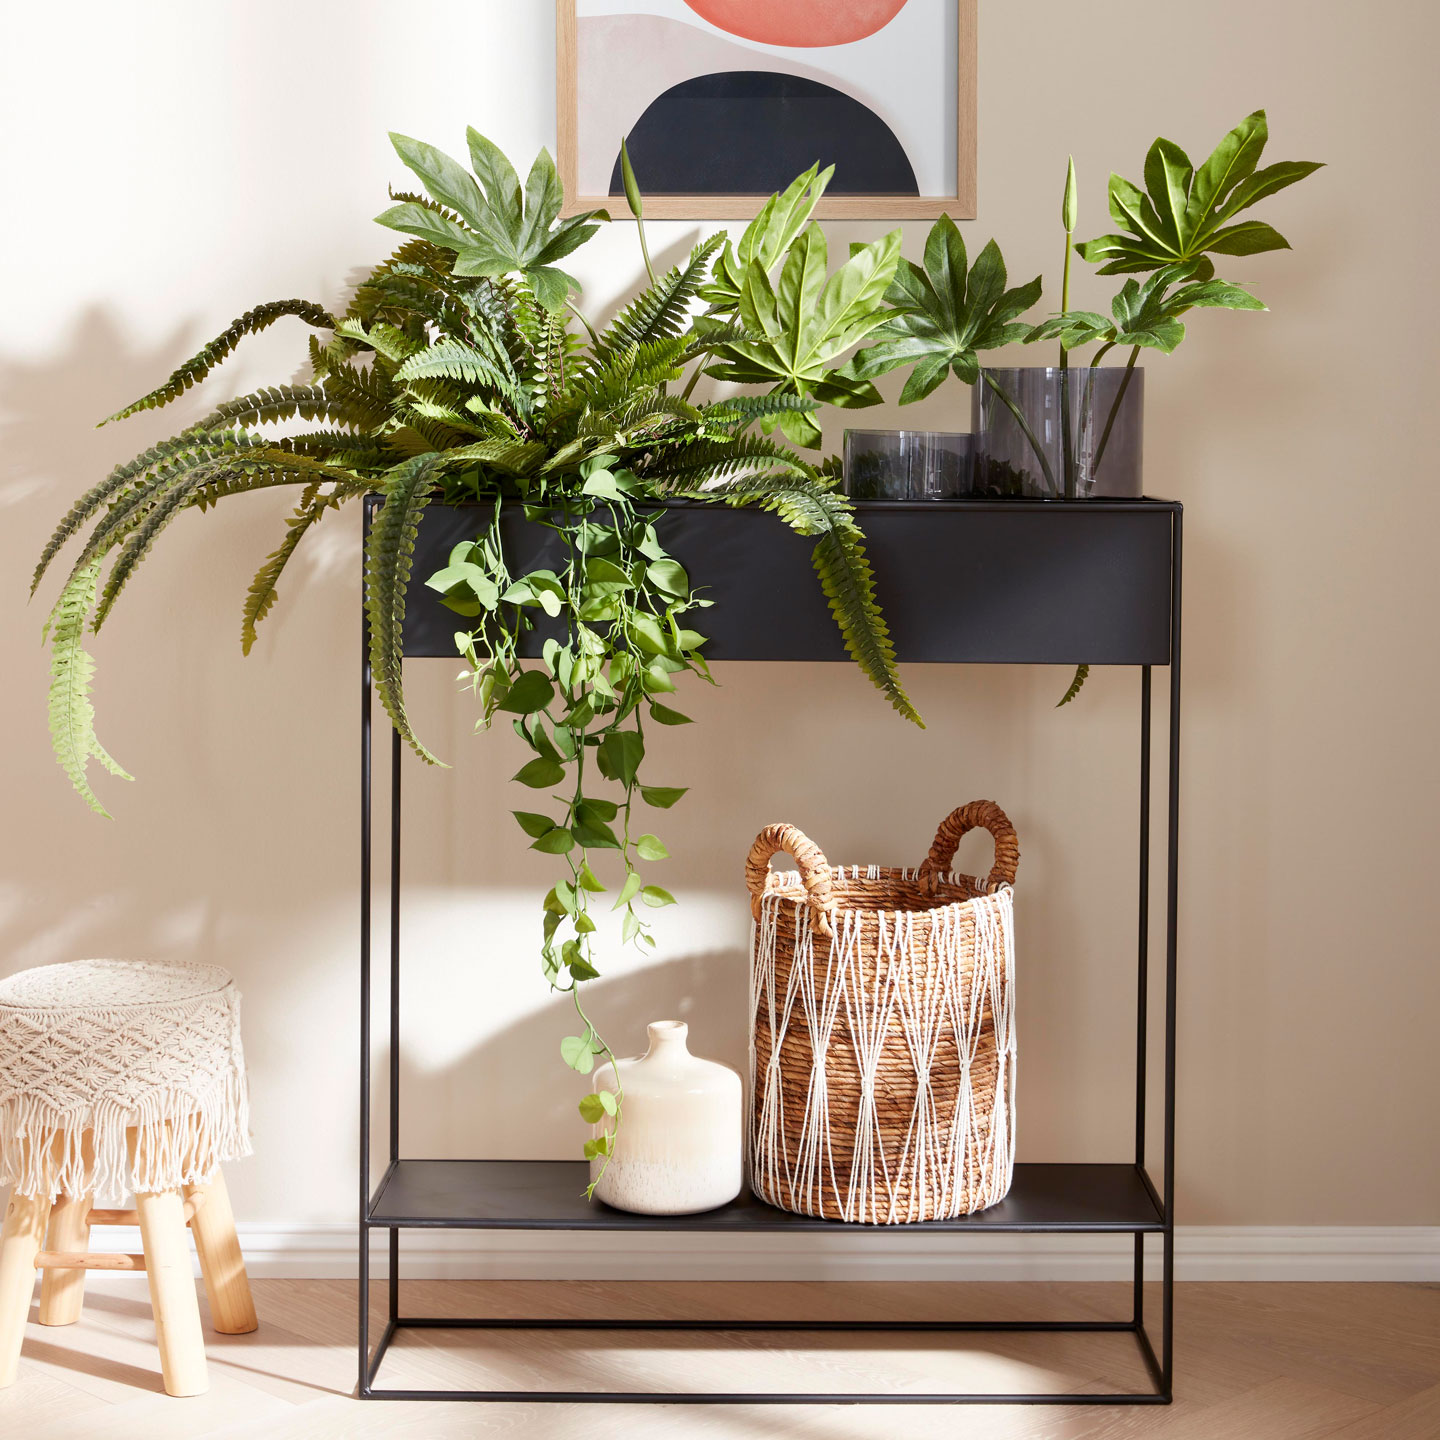 Plantbox als Sideboard mit Pflanzen und Dekoration